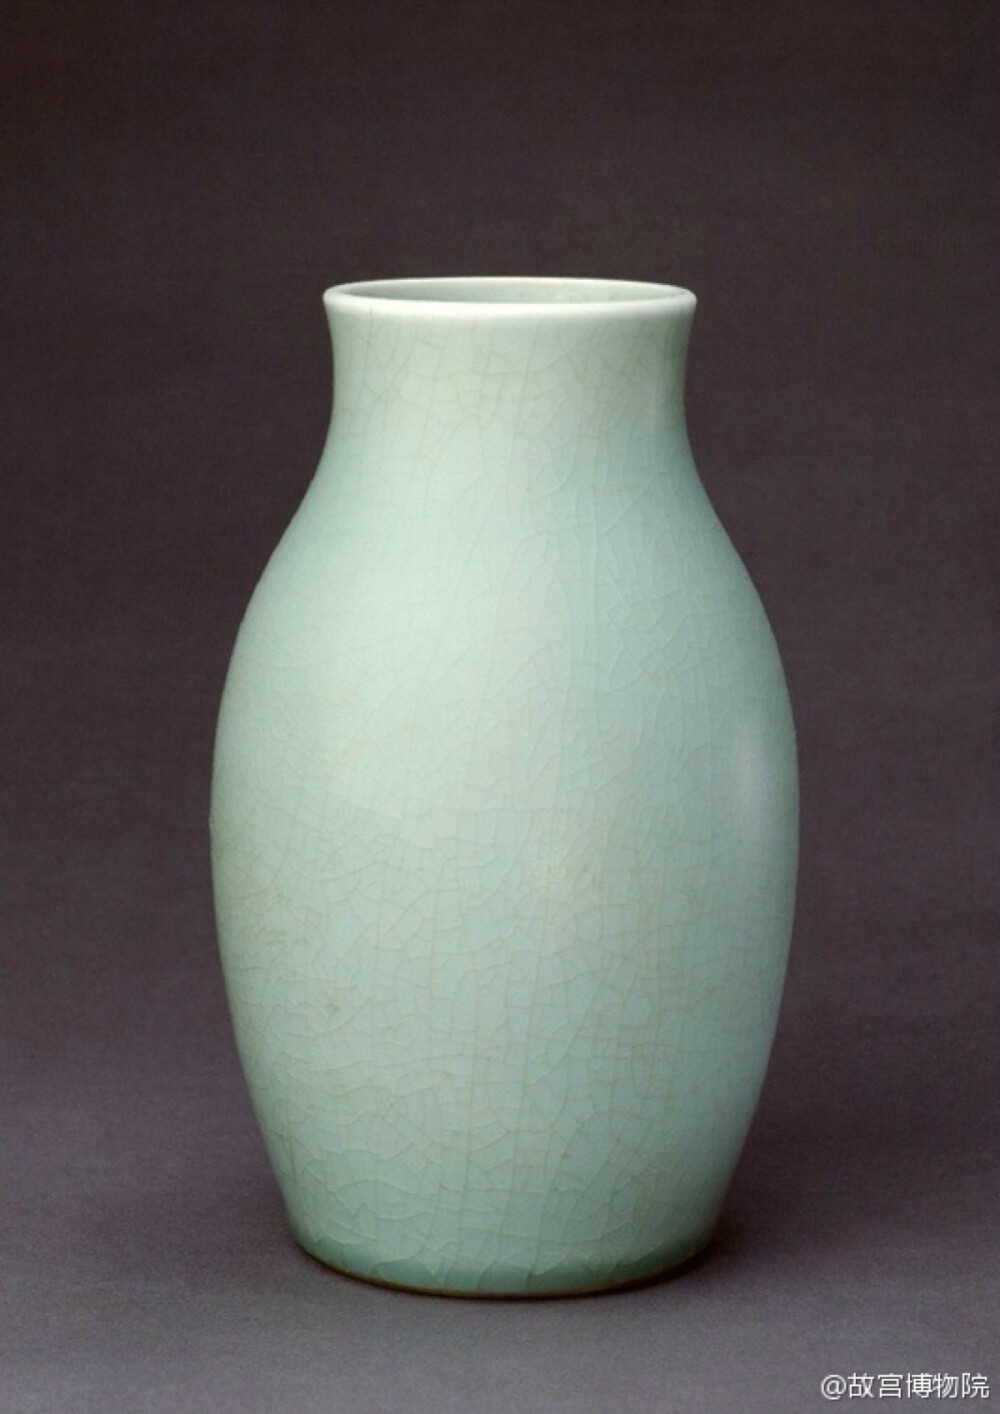 青釉,这种传统的高温釉是中国陶瓷史上最早出现的釉,历经了东汉,六朝